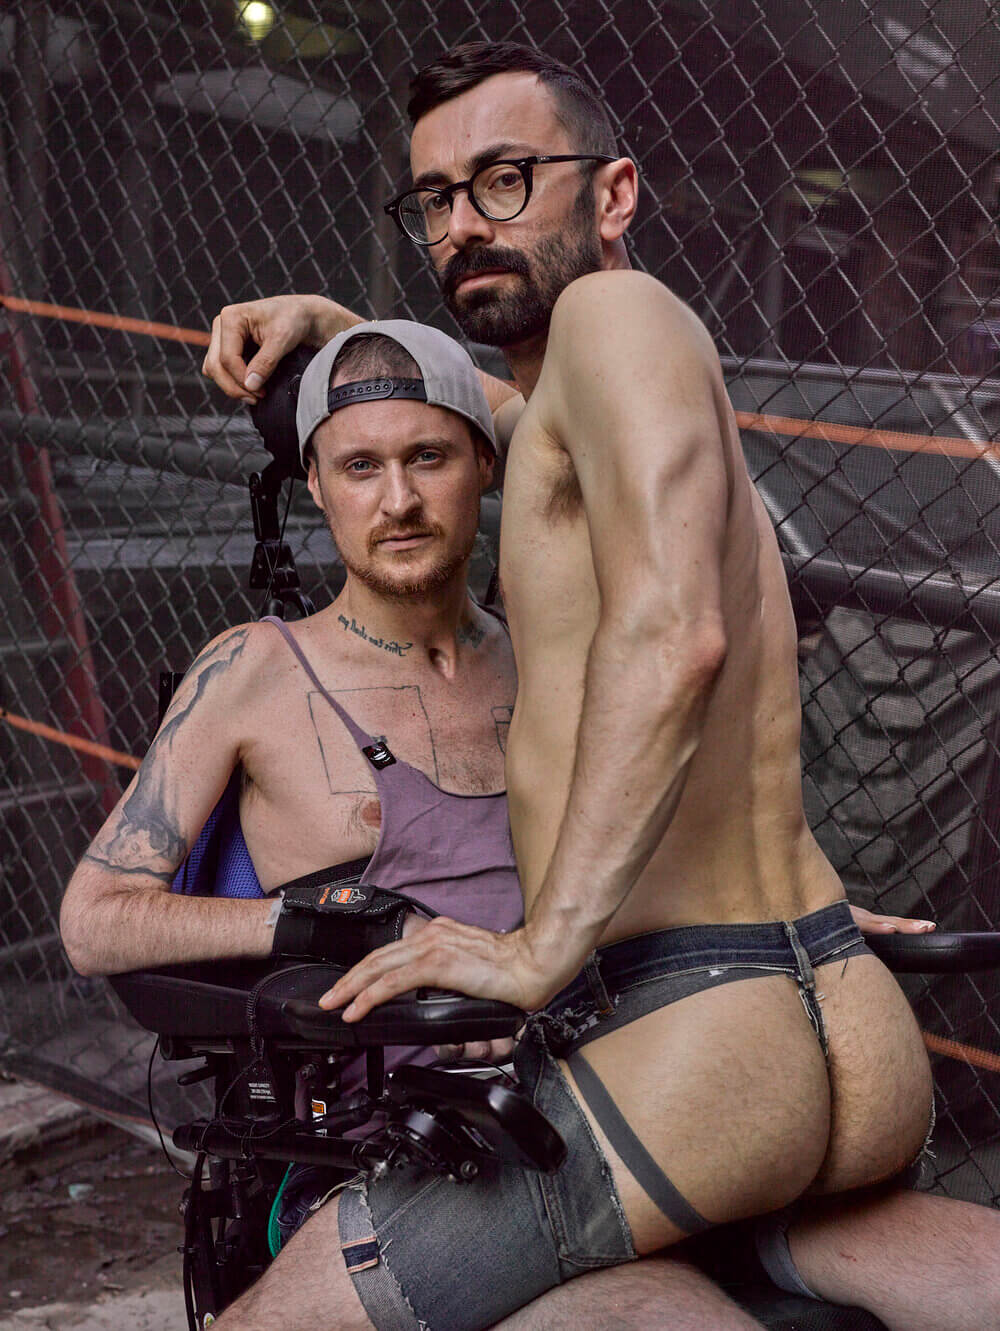 Sesso e disabilità nella fotografia di Robert Andy Coombs: "Dobbiamo autorappresentarci" - Intervista - Benonmylapatfolsomeeast - Gay.it